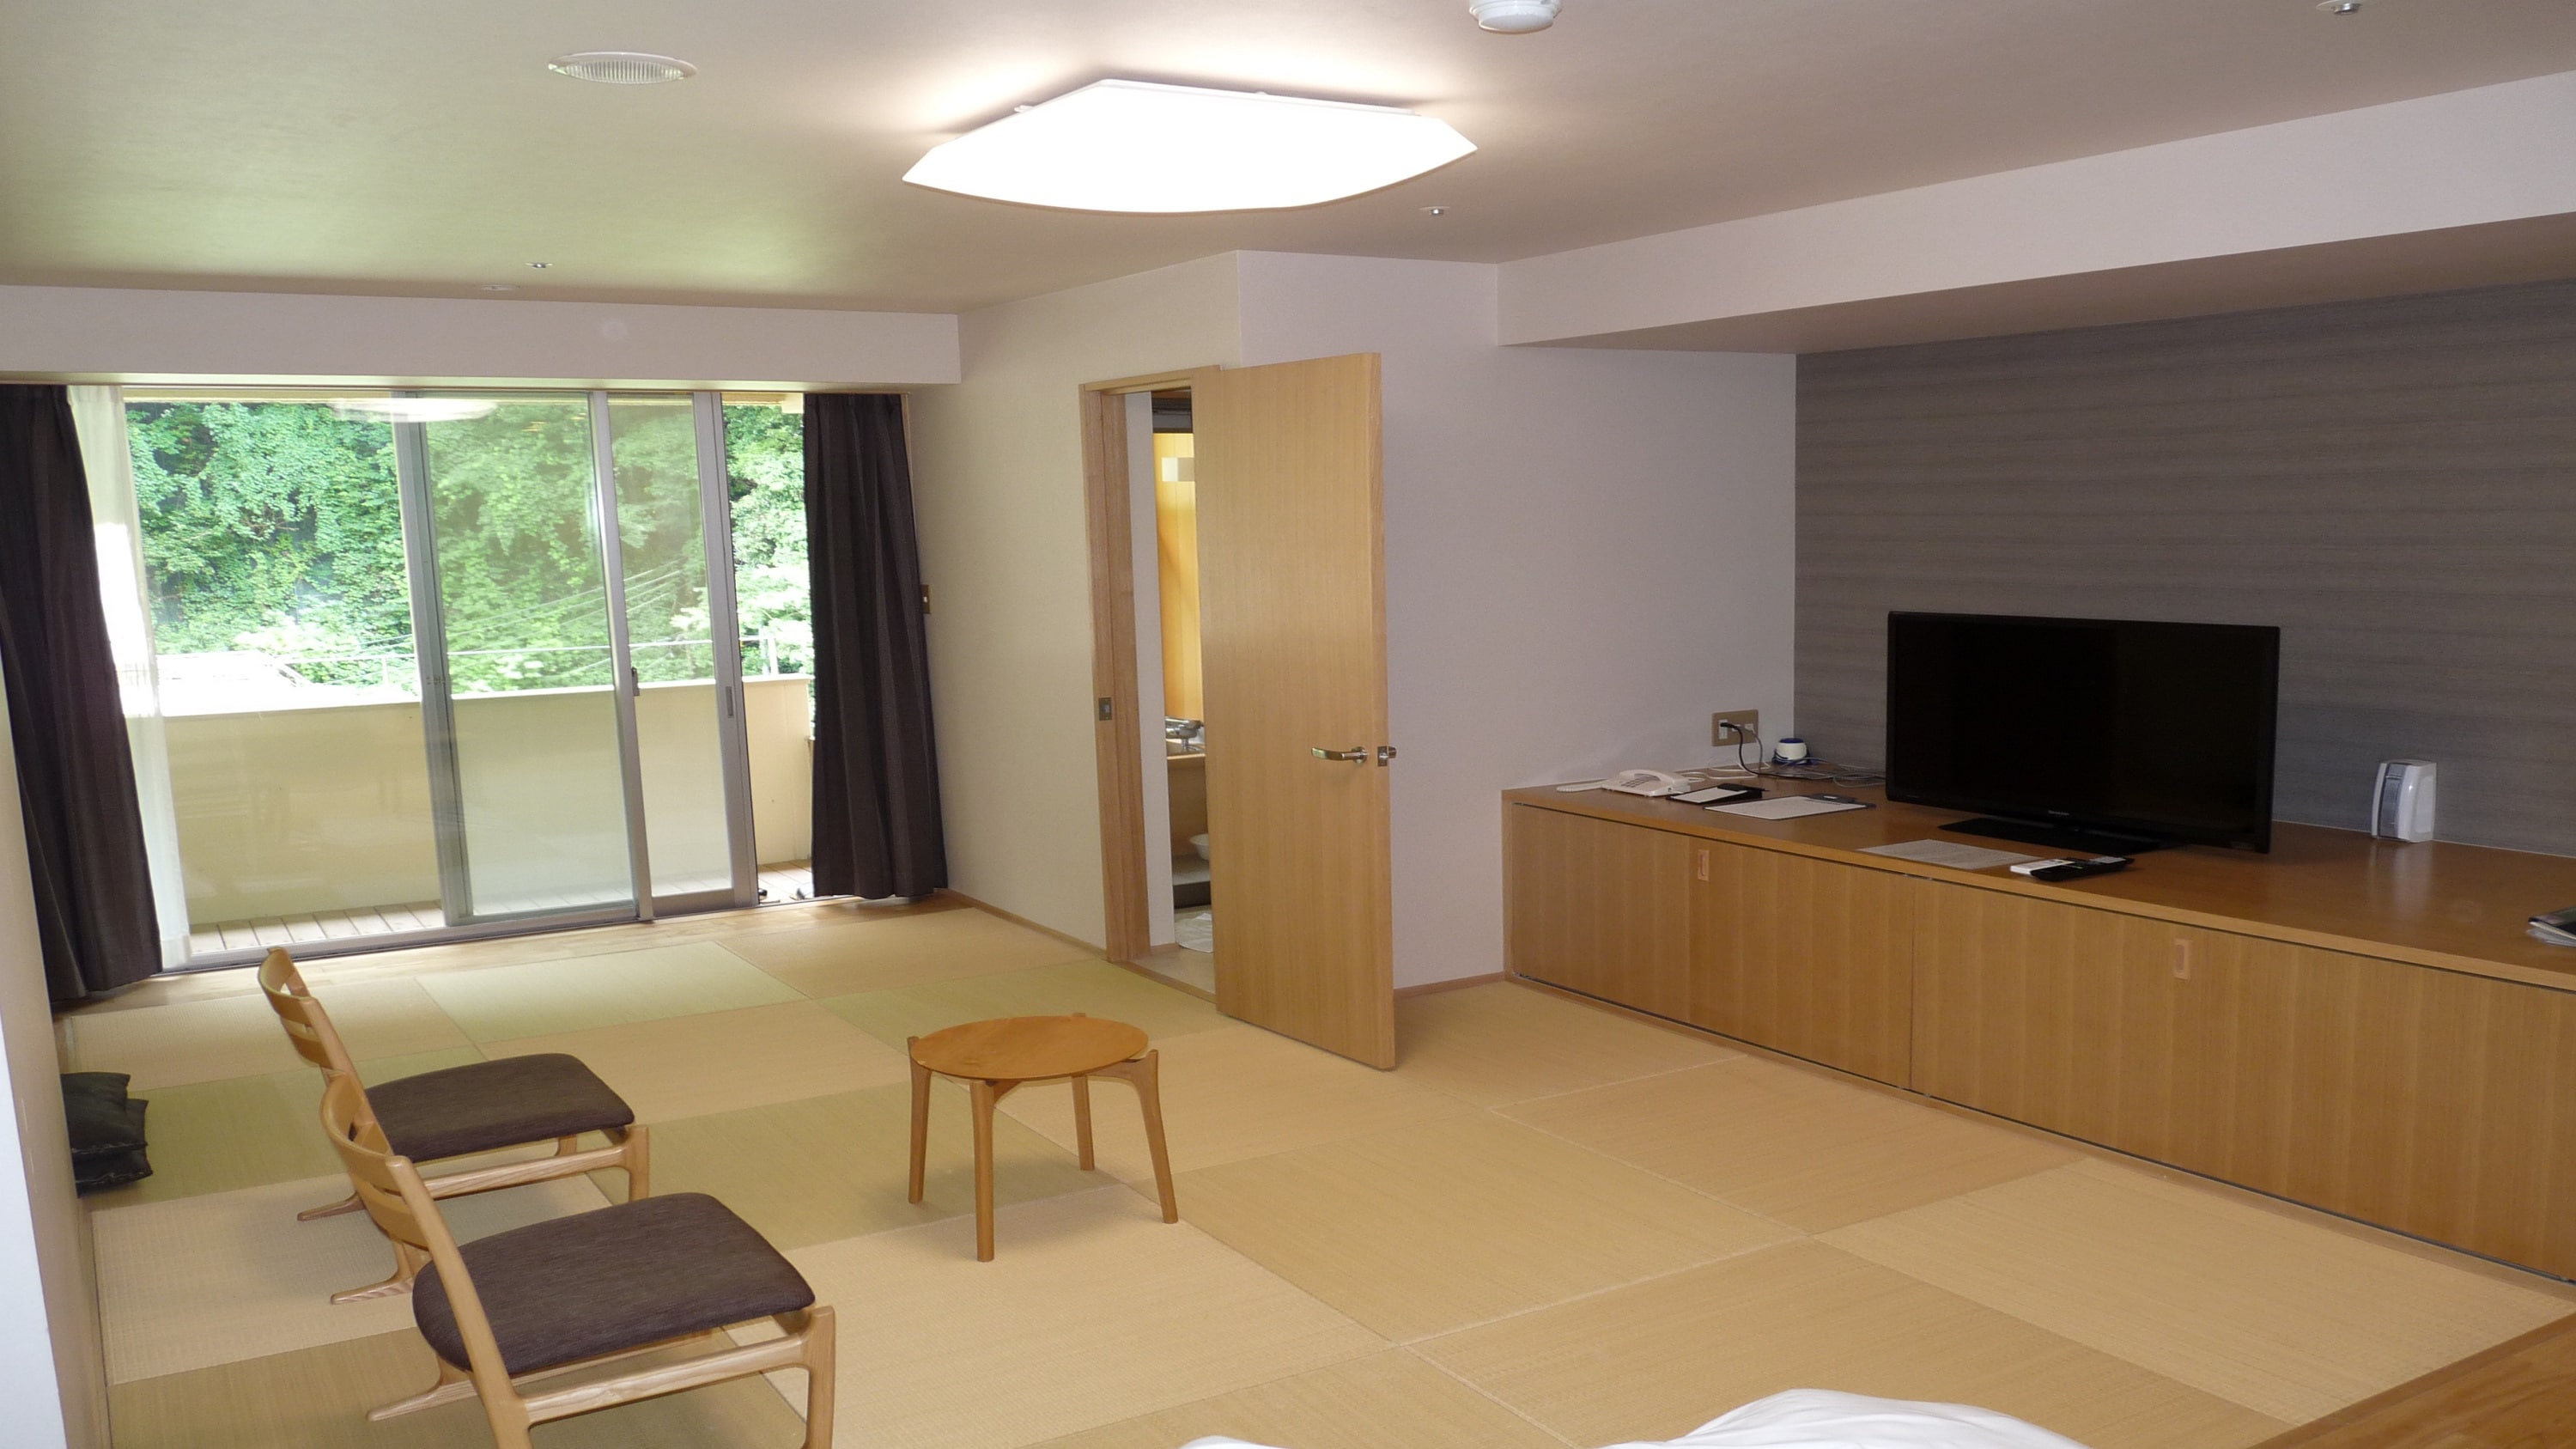 Gedung Barat Kamar bergaya Jepang-Barat dengan bak mandi cemara setengah terbuka (bebas rokok) Ruang tamu